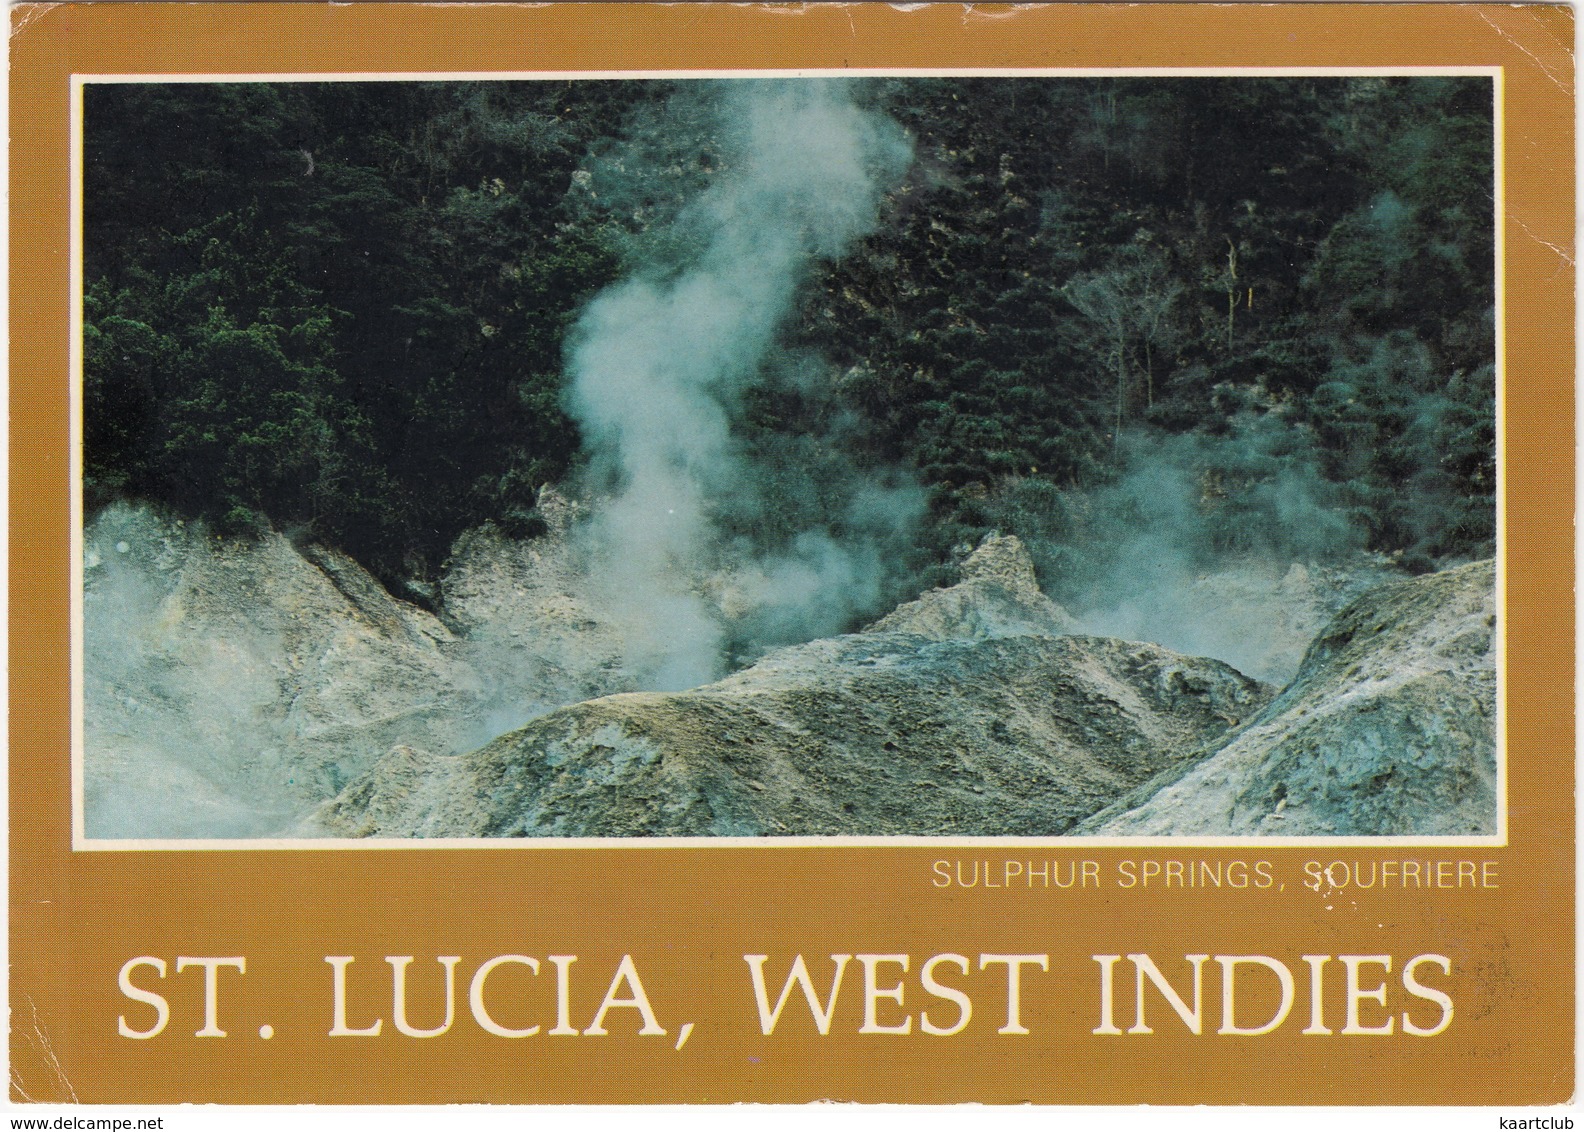 St. Lucia, West Indies - Sulphur Springs, Soufriere - Saint Lucia